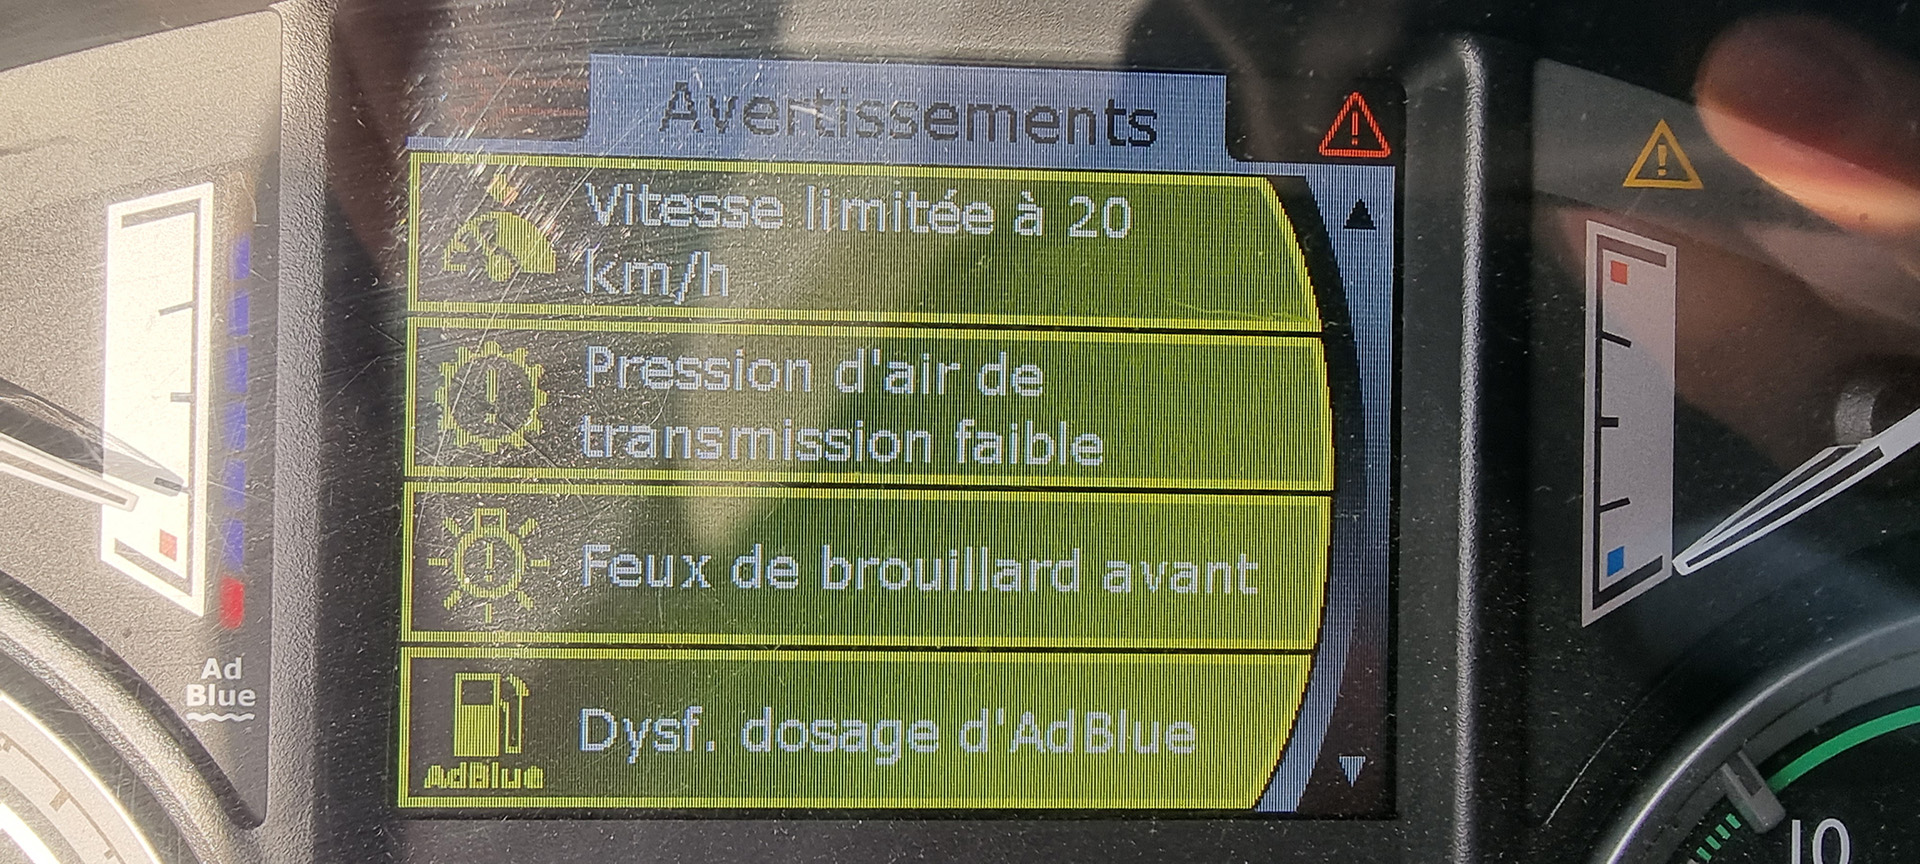 Résolution d'une panne d'adblue sur Daf XF 510 Euro 6